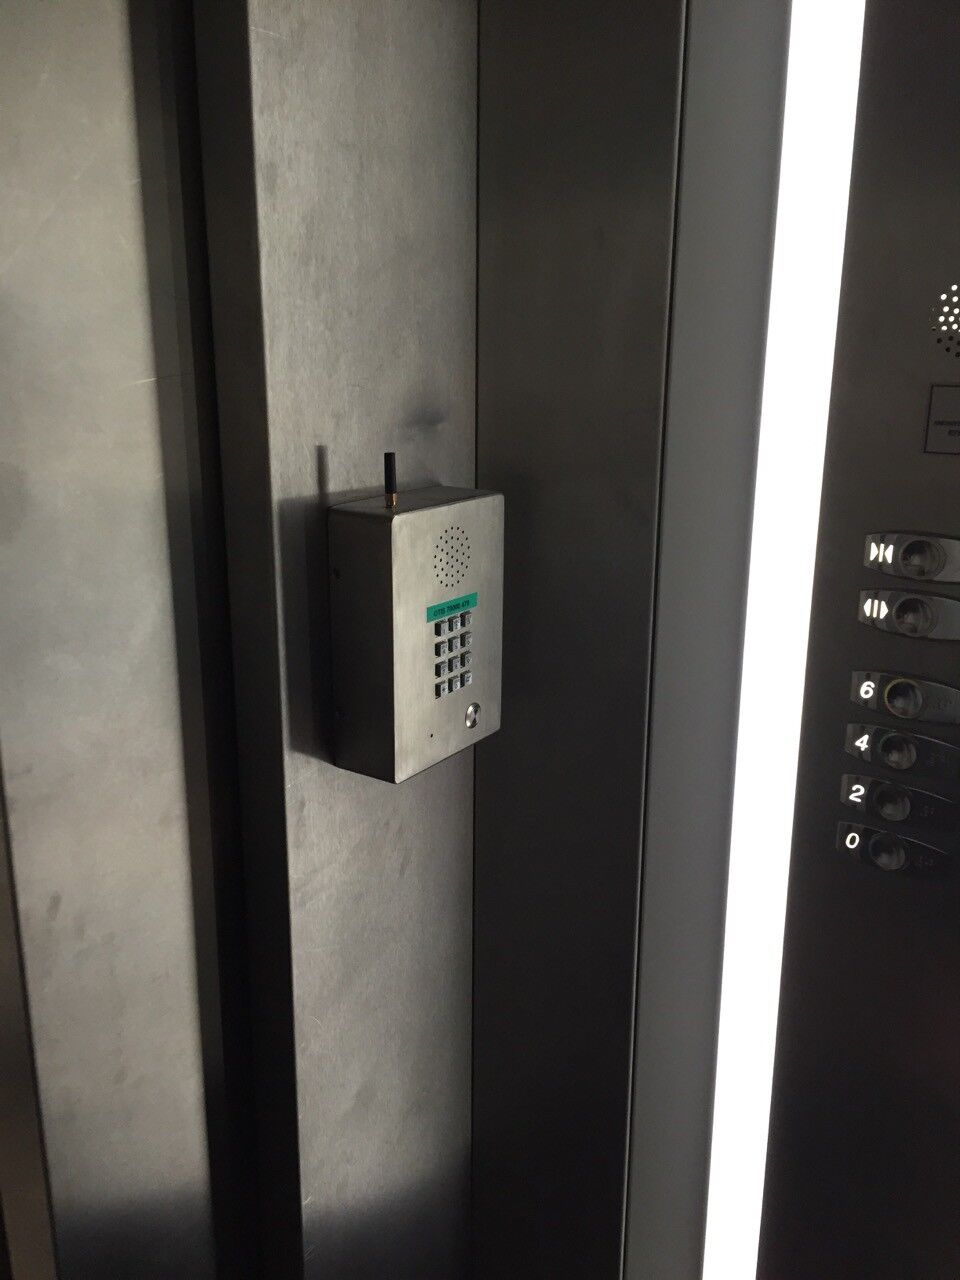 ascensor manos libres telefono